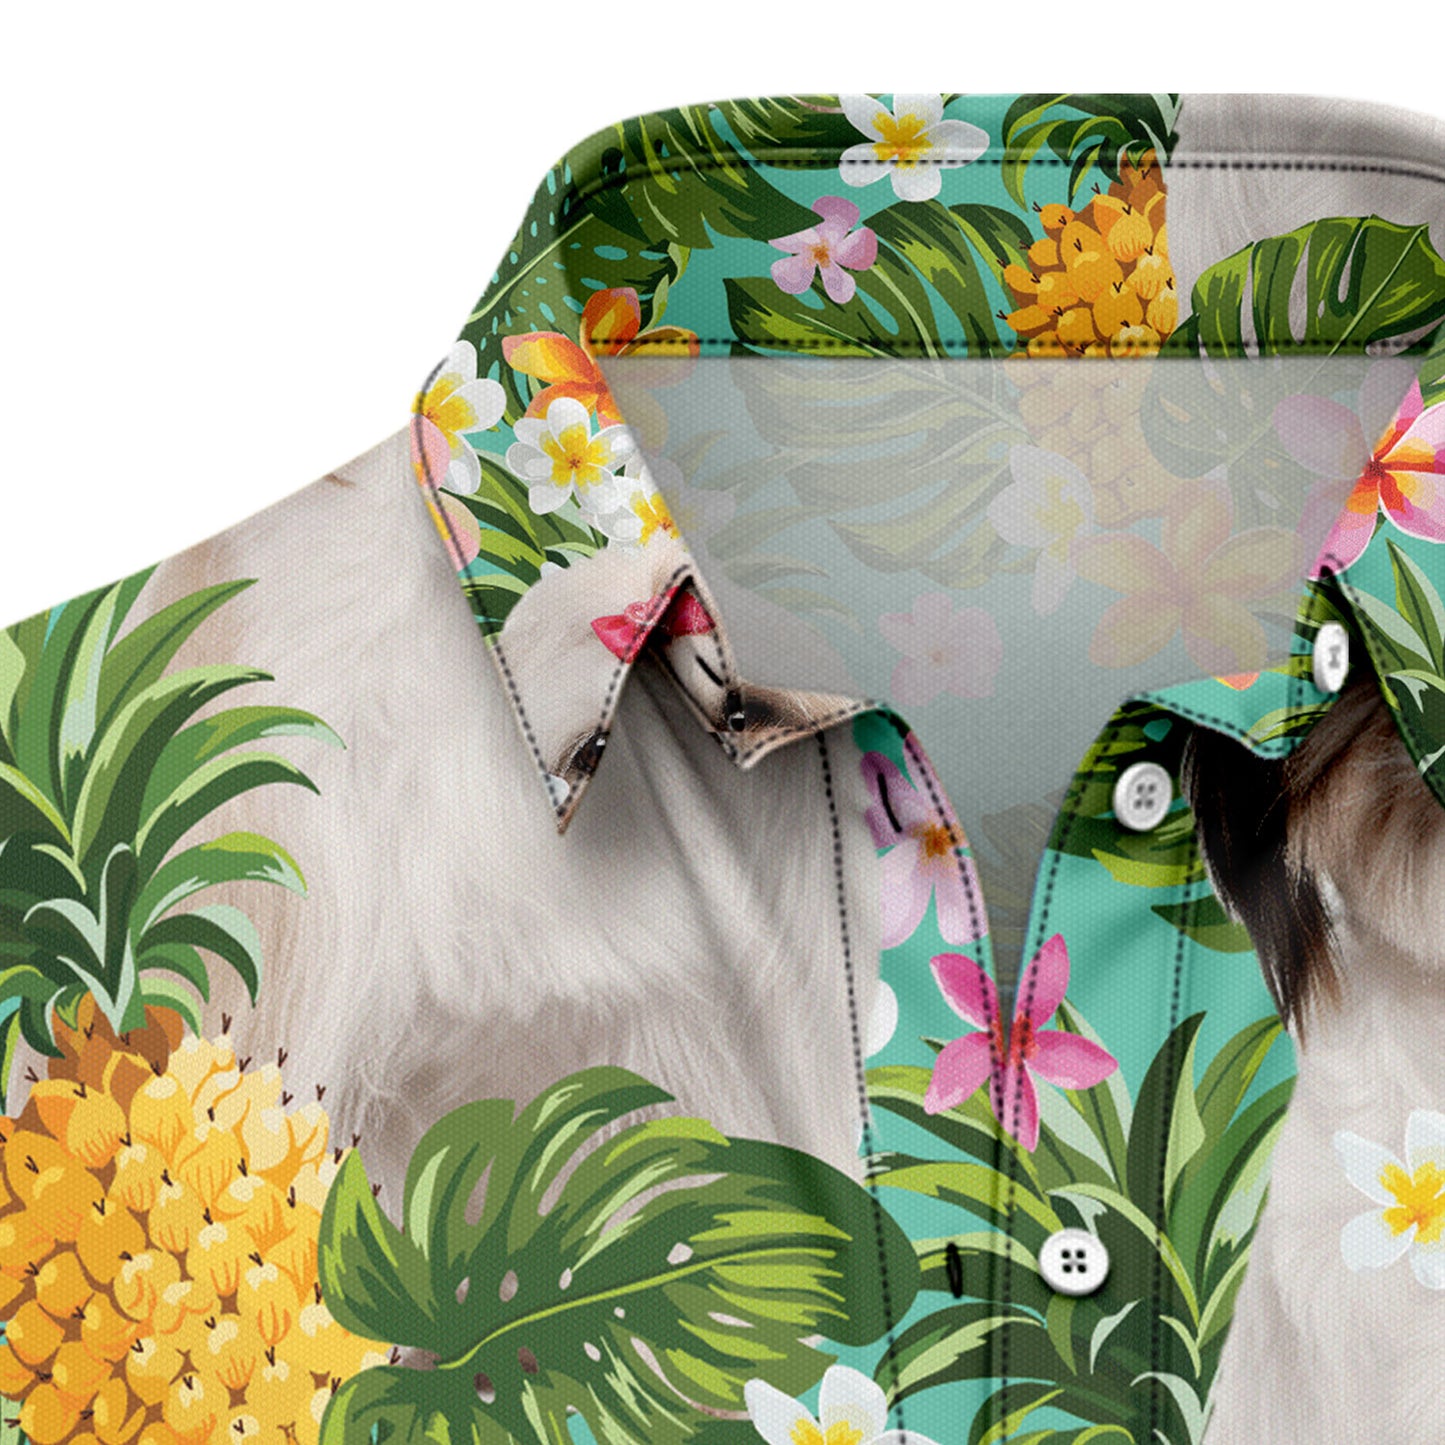 Tropical Pineapple Shih Tzu H87057 Hawaiian Shirt